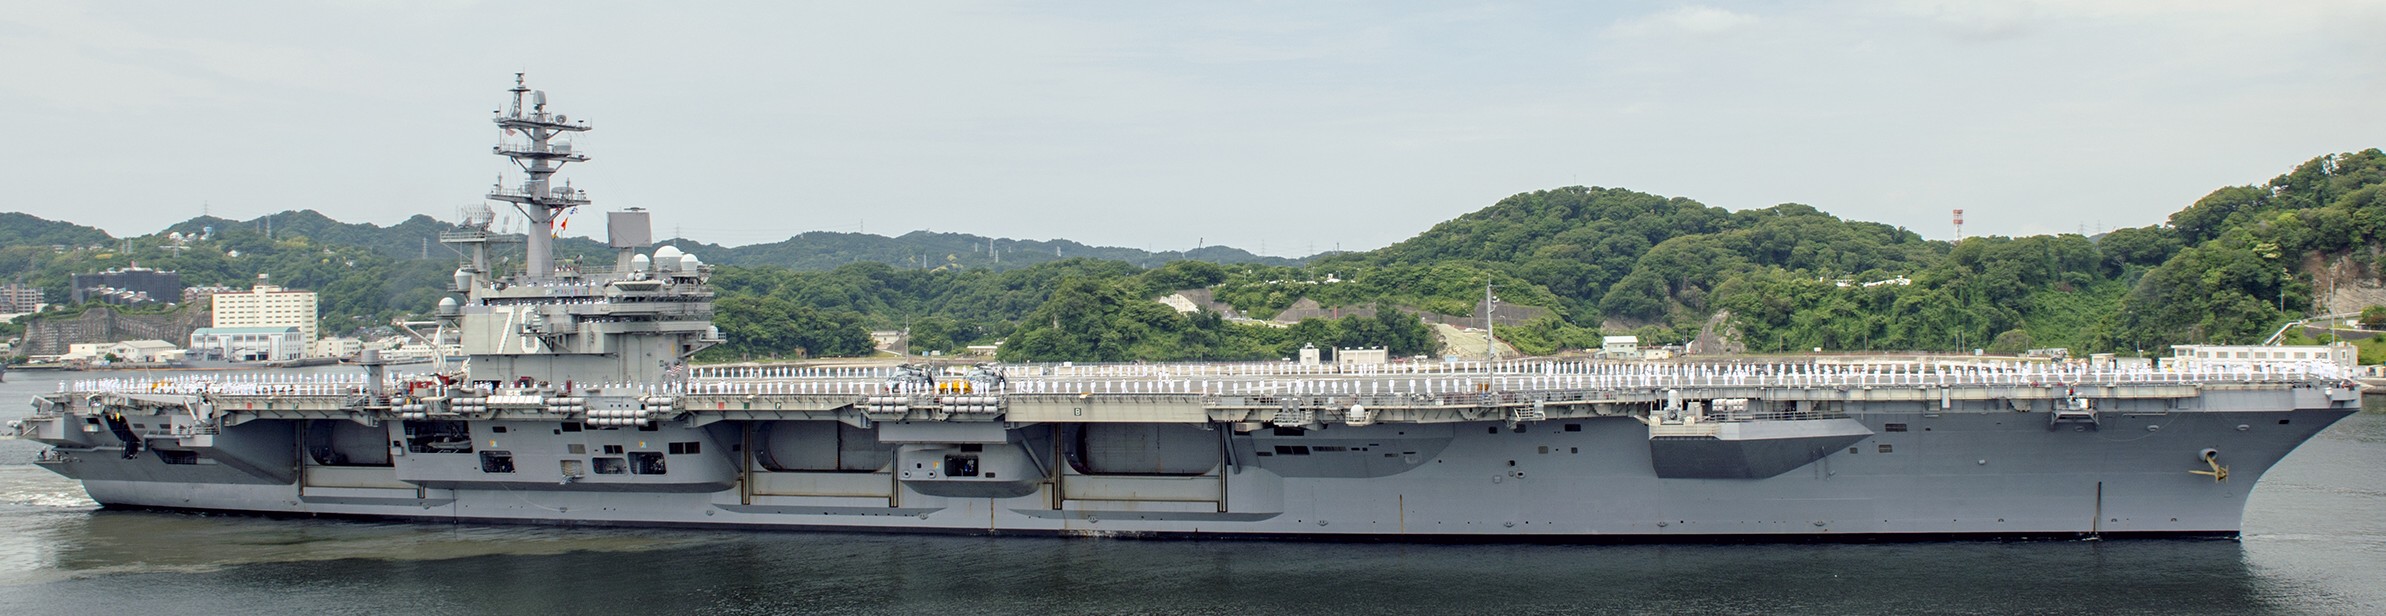 cvn-76 uss ronald reagan nimitz class aircraft carrier departing yokosuka 111